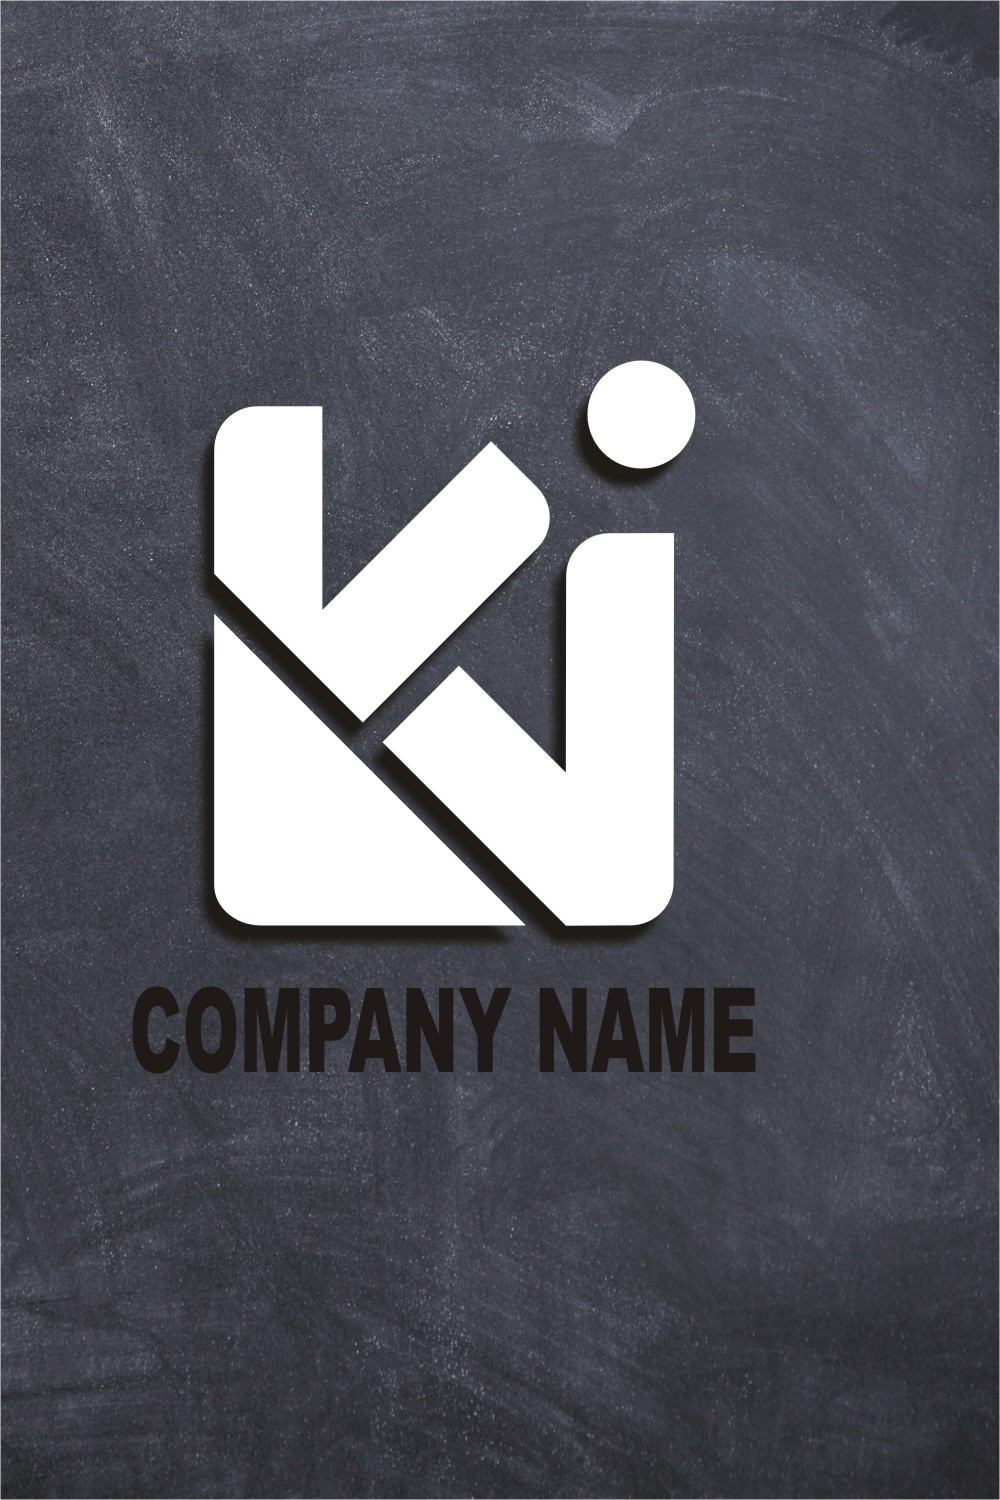 ''K'' monogram logo pinterest preview image.